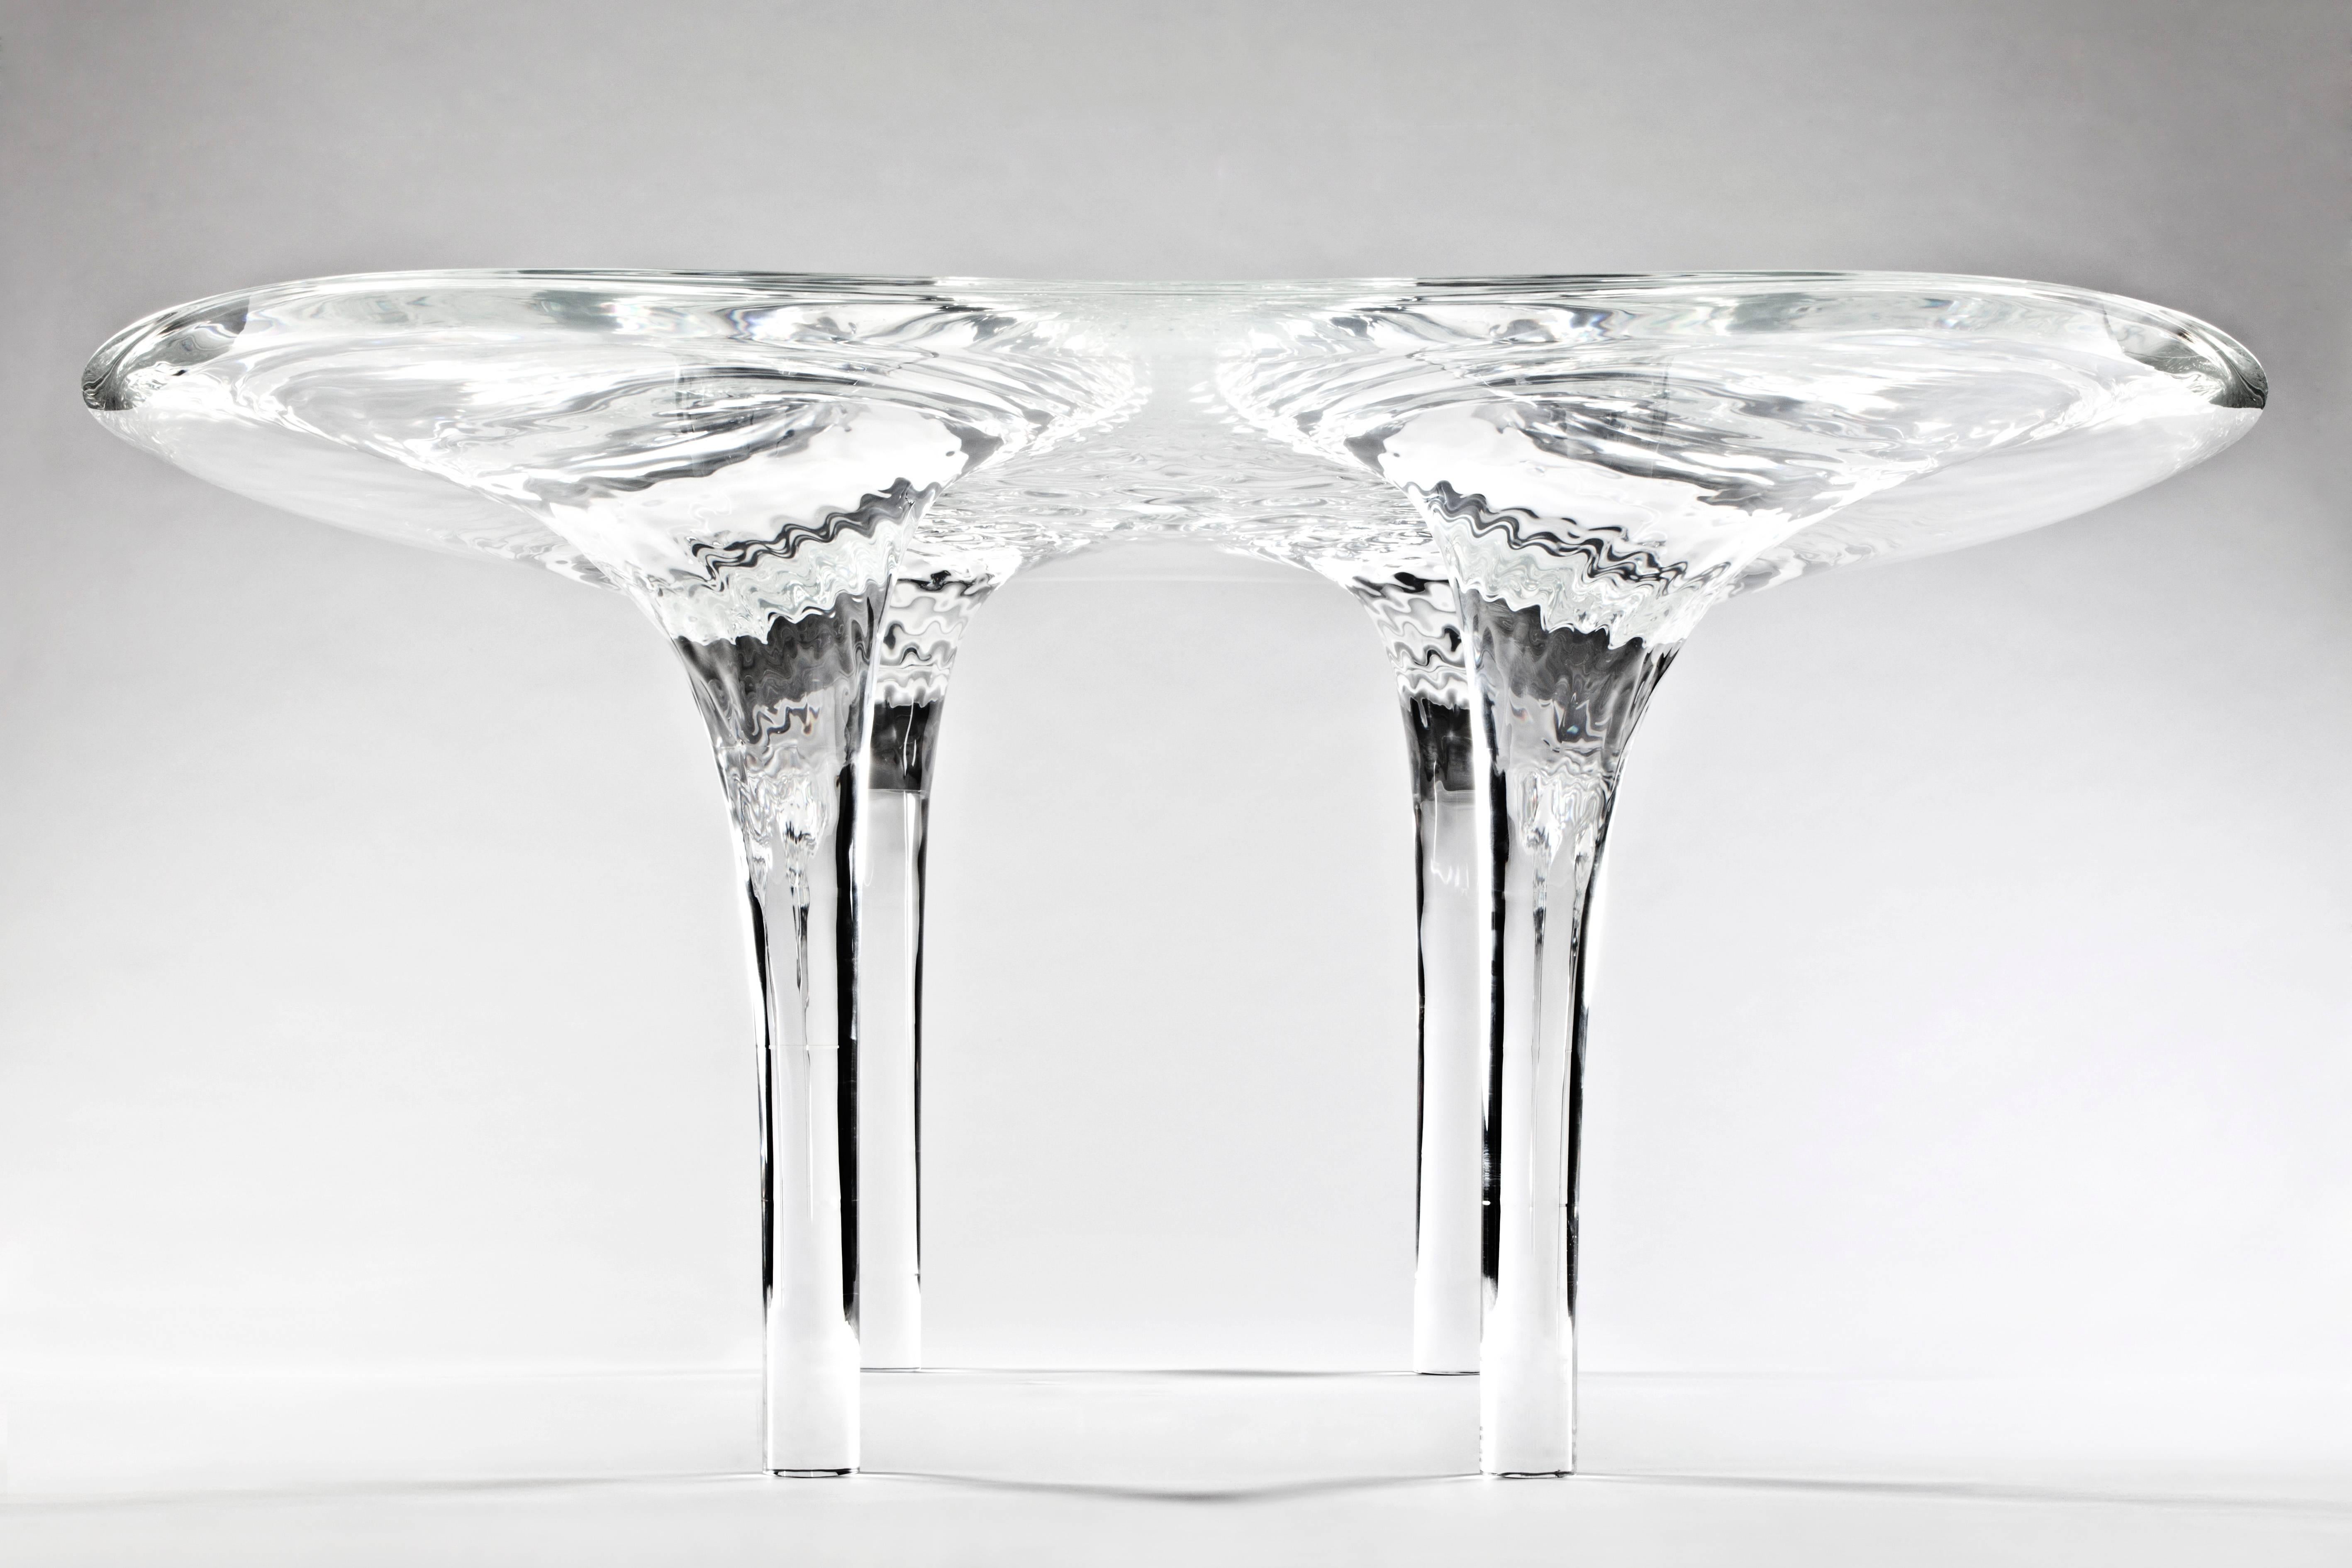 Liquid Glacial Table - Art by Zaha Hadid